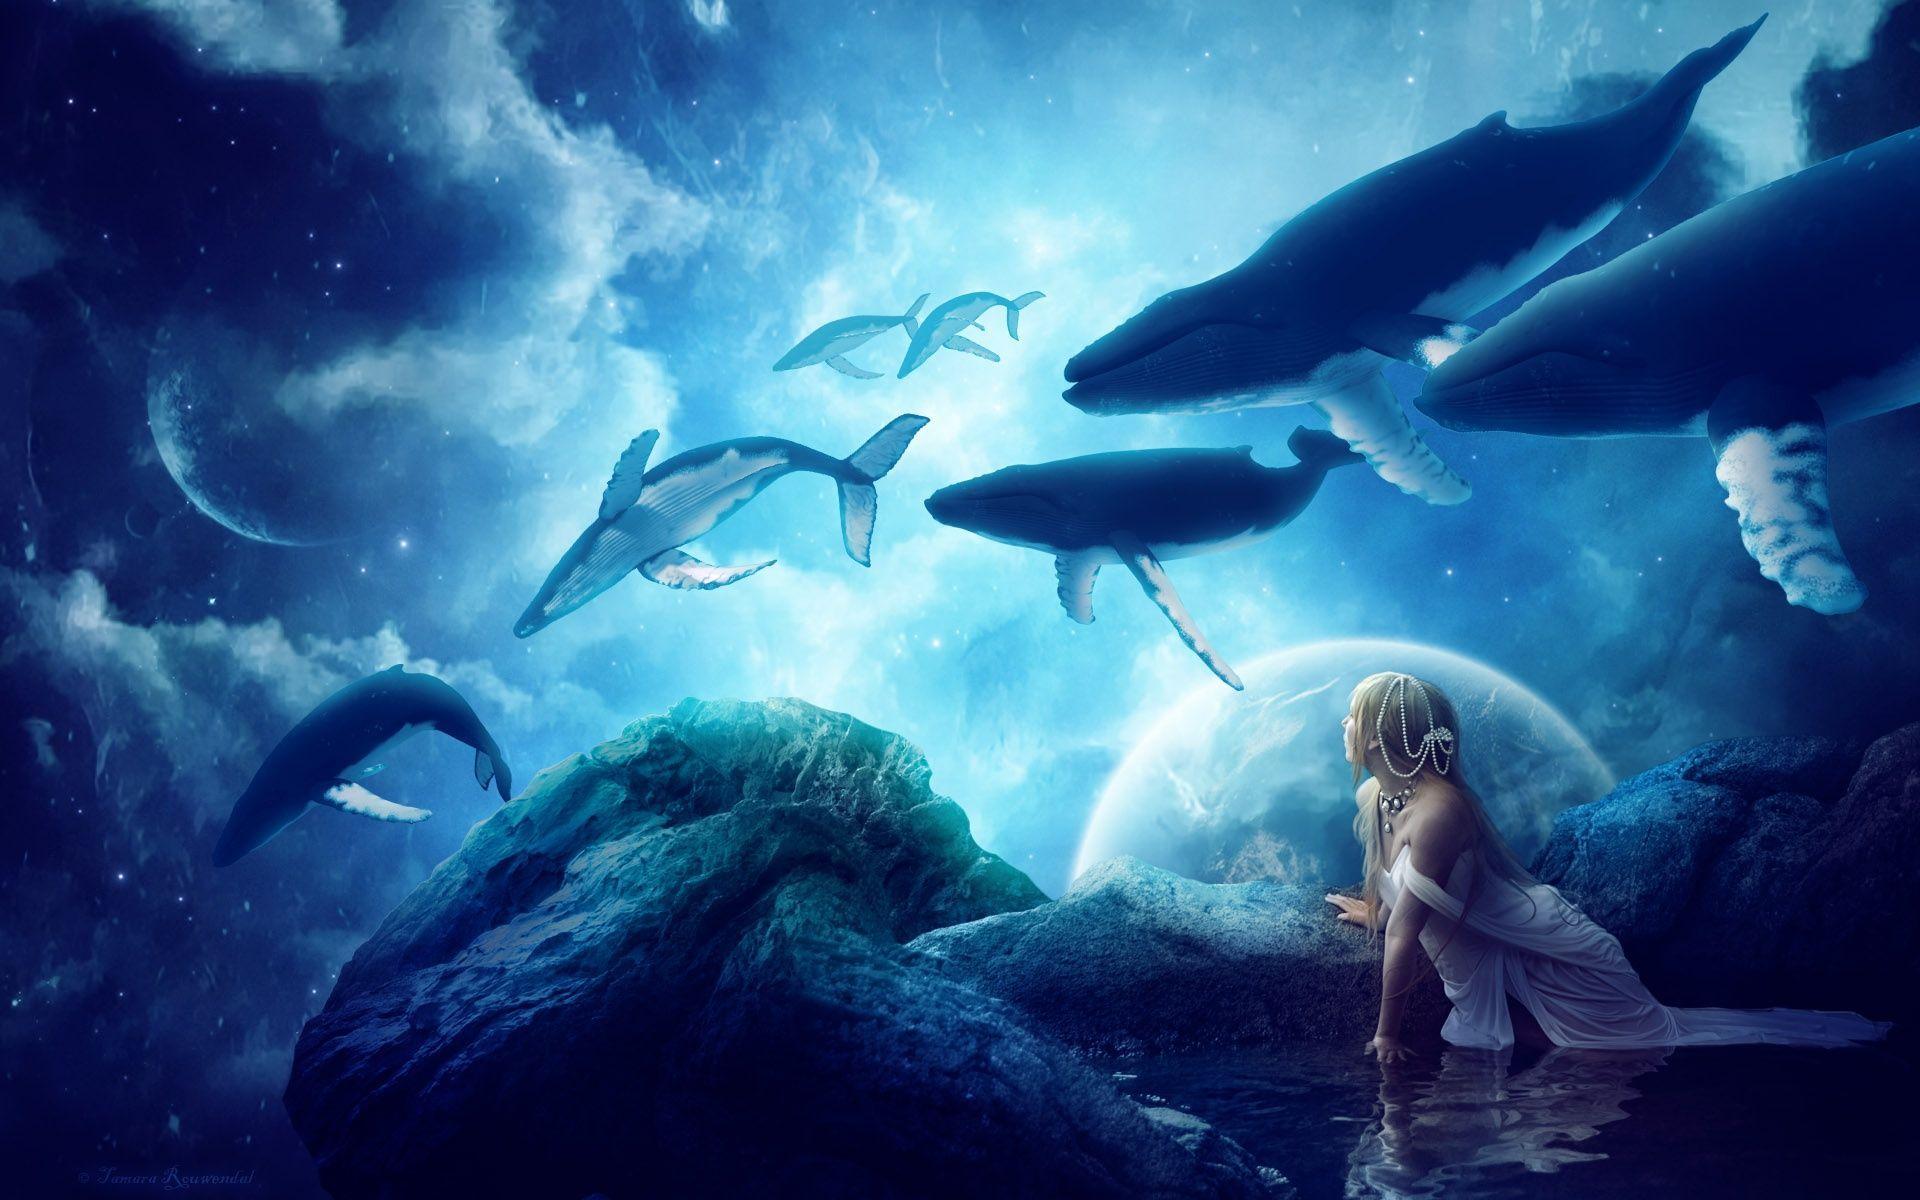 Whales Dream HD Desktop Wallpaper. Cool Wallpaper. World